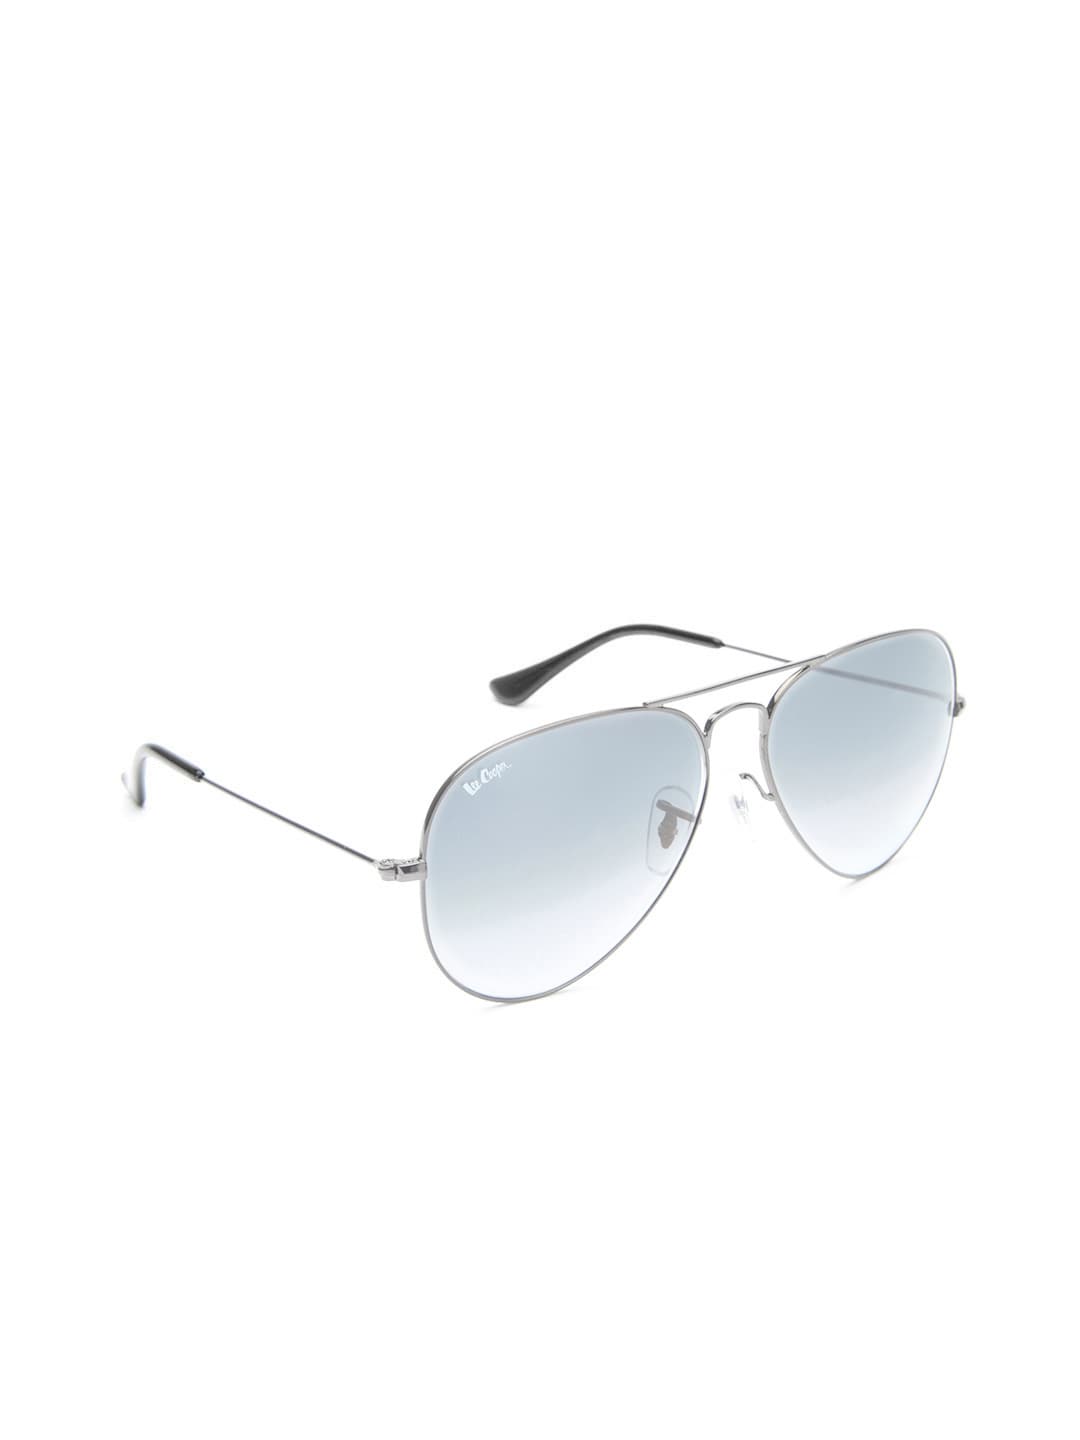 Lee Cooper Unisex Aviator Sunglasses LC9000 FOA C2 Price in India